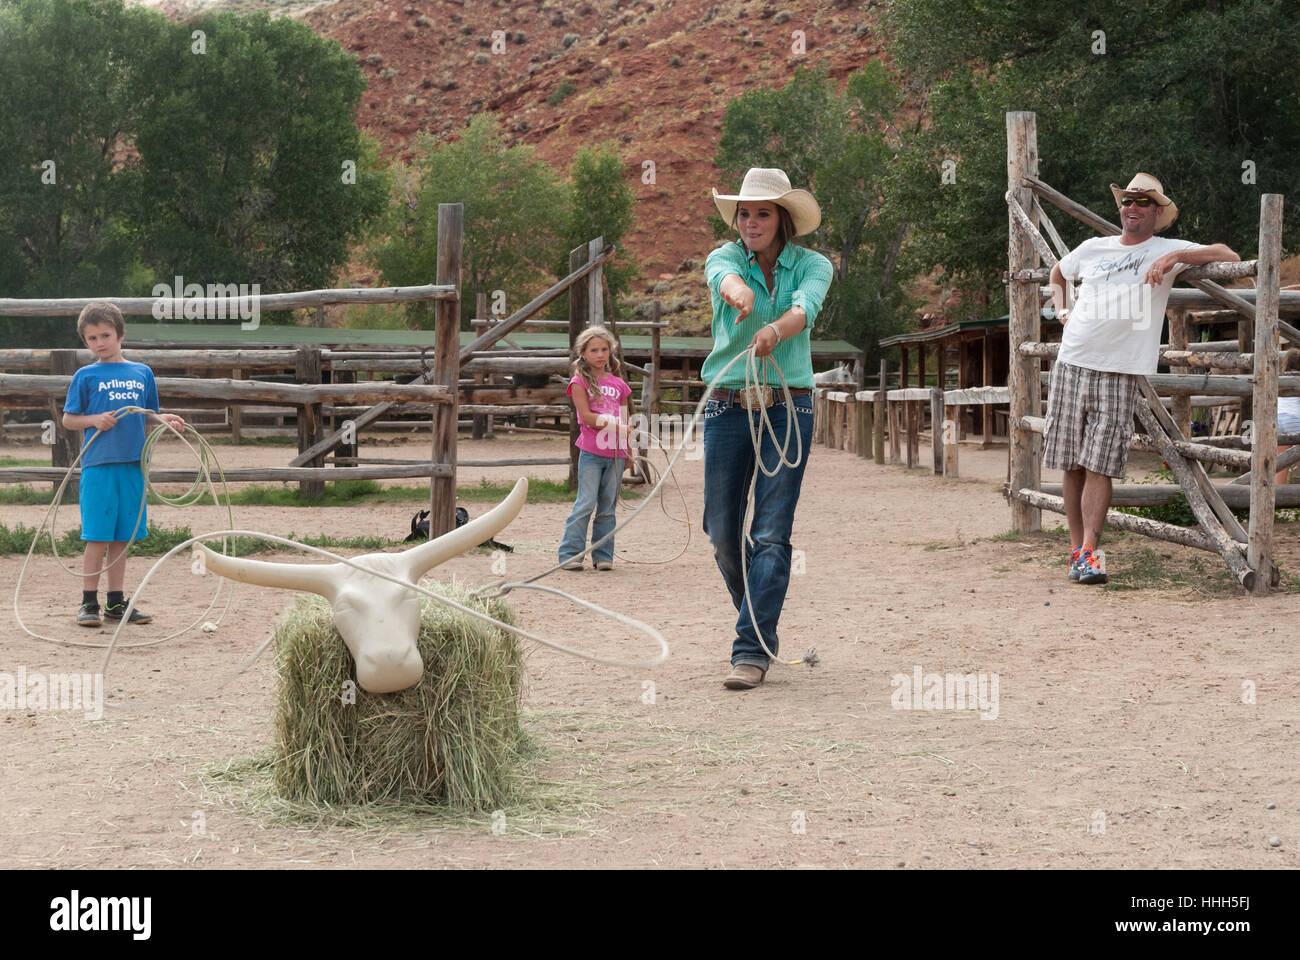 Roping práctica en el Lazy L&B rancho vacacional en Dubois, Wyoming: wrangler boleadoras una vaca paca de heno mientras los niños esperan su turno. Foto de stock